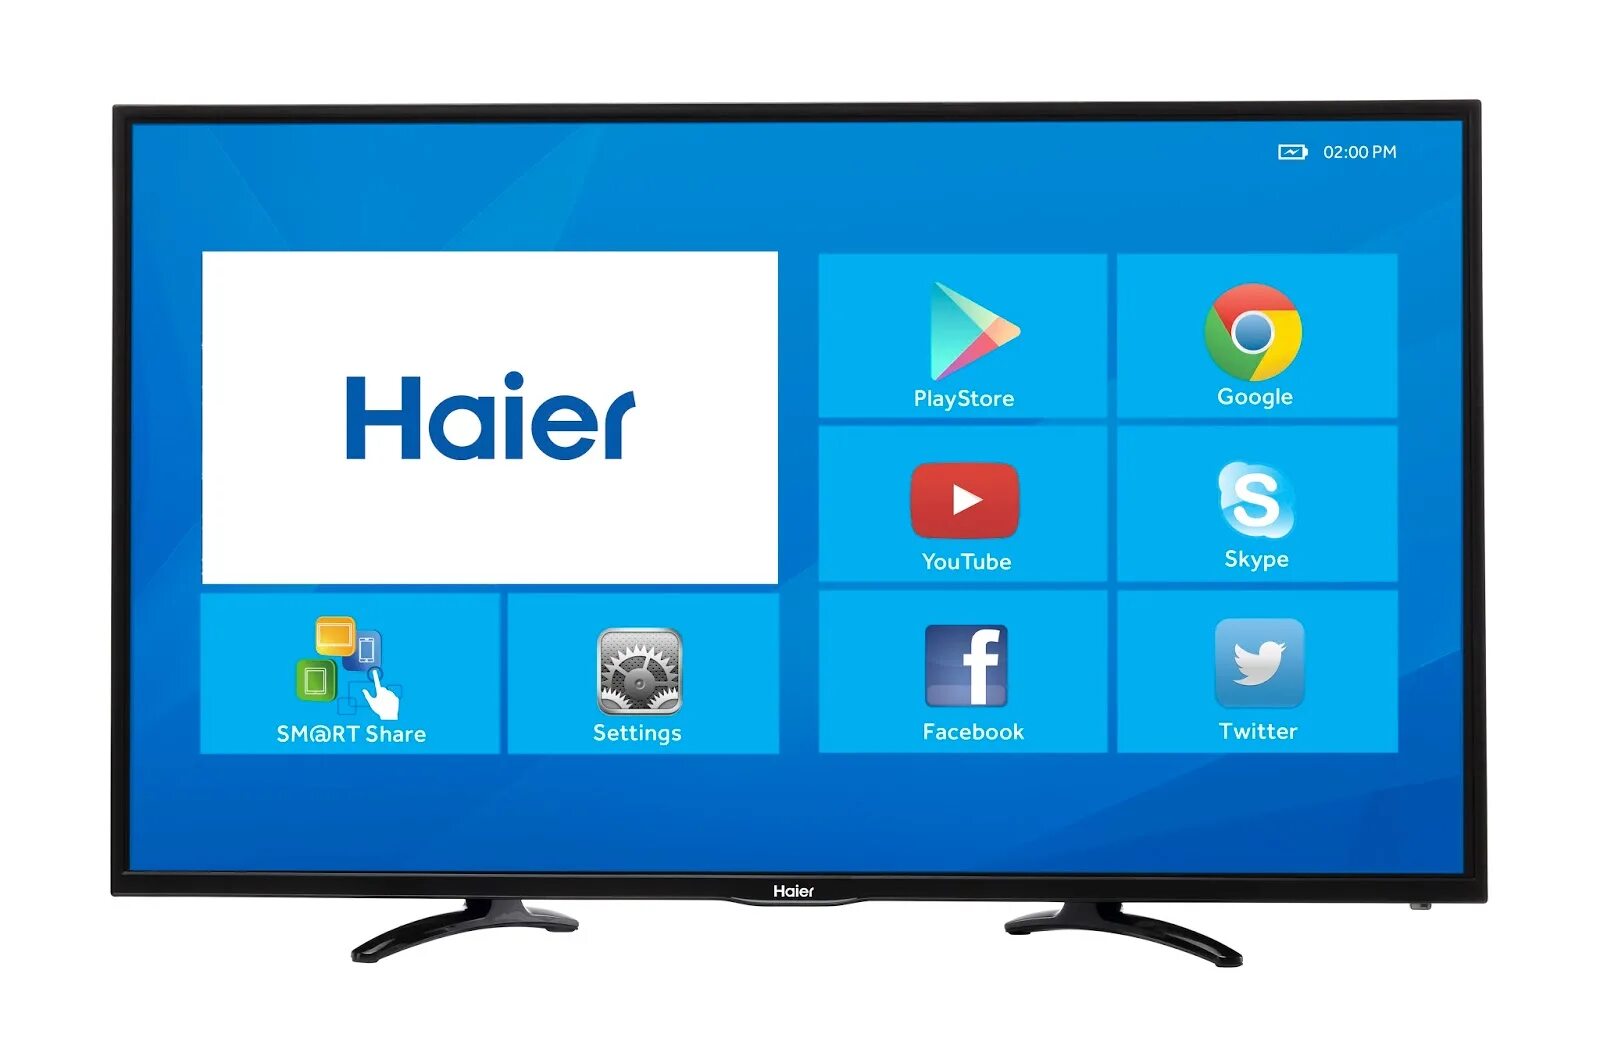 Телевизор Haier андроид ТВ. Телевизор Haier Smart TV s1. Haier 32 Smart TV s1. Телевизор Haier 32 Smart TV BX. Программы на телевизор haier